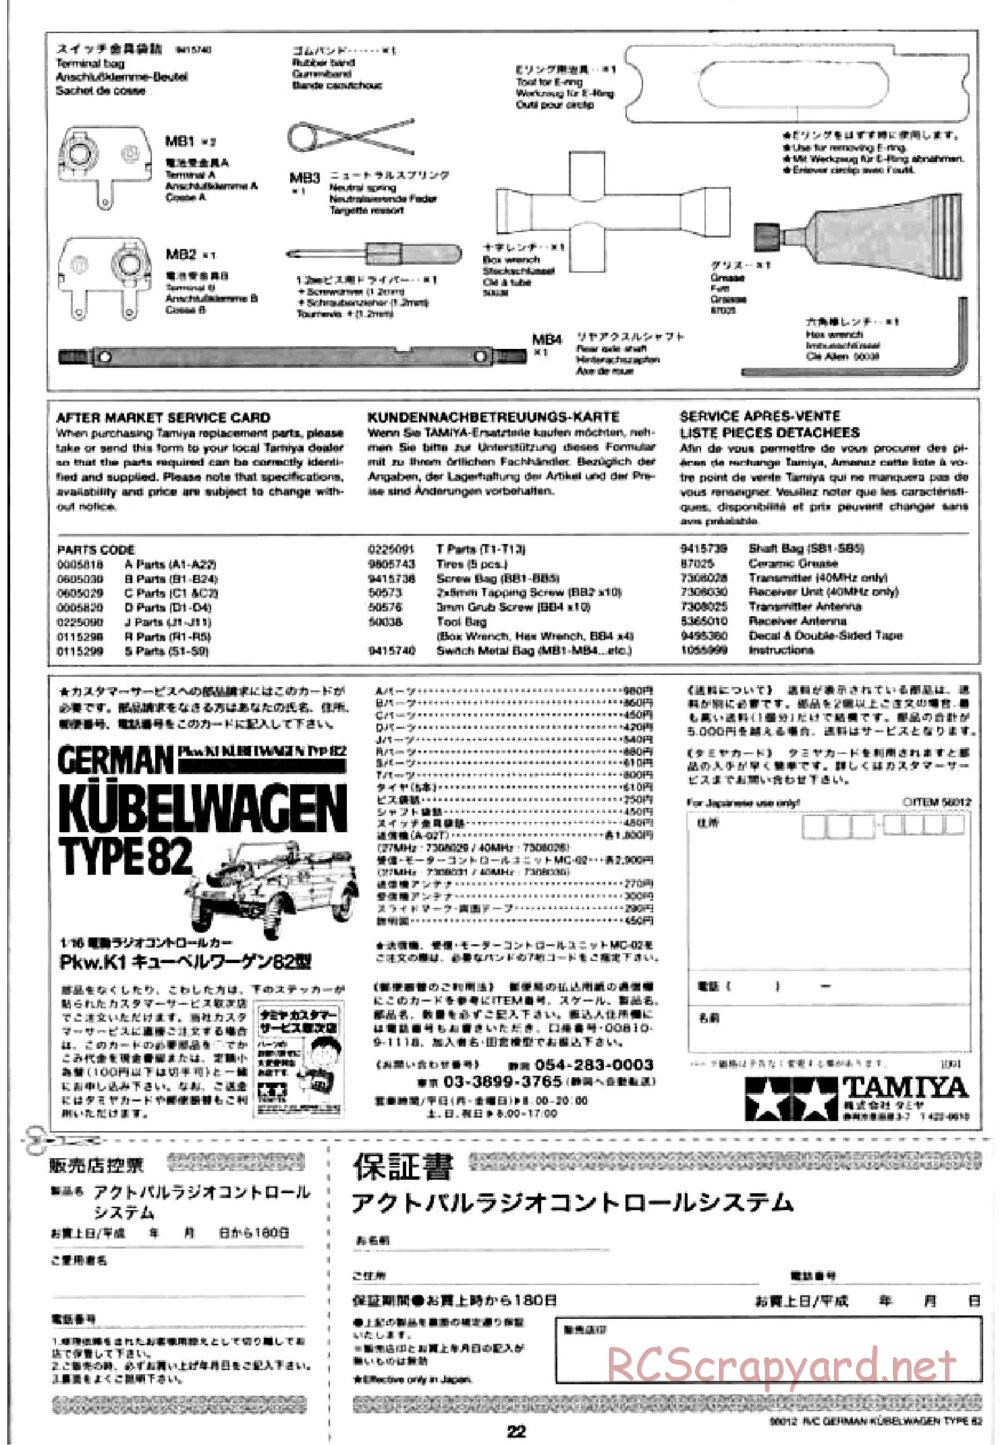 Tamiya - Kubelwagen Type 82 Chassis - Manual - Page 22